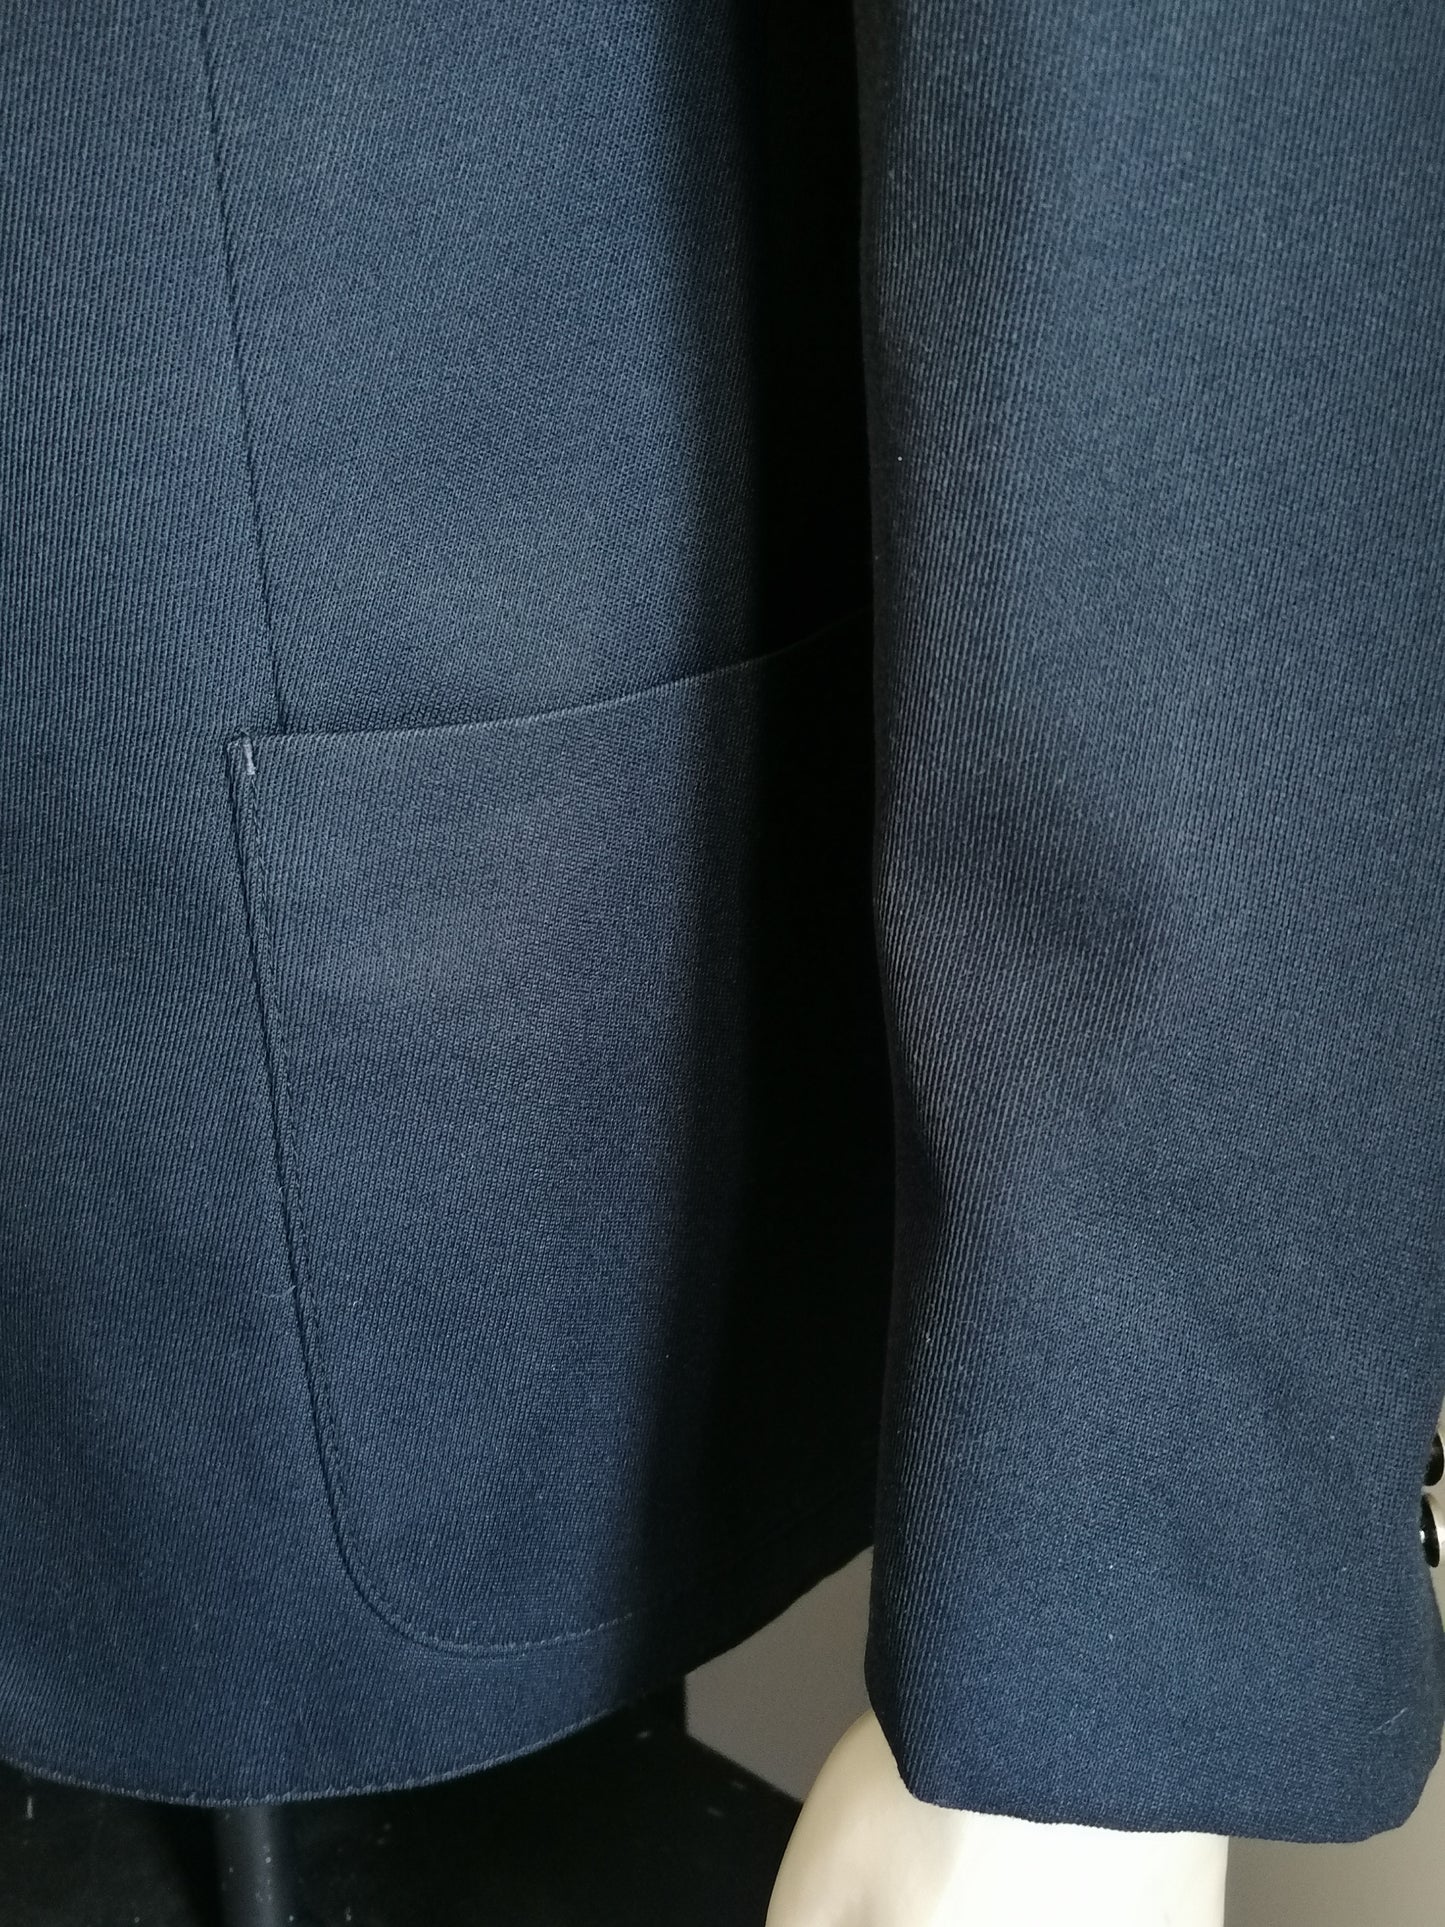 Costume de laine vintage. Couleur bleu foncé. Taille 56 / XL.